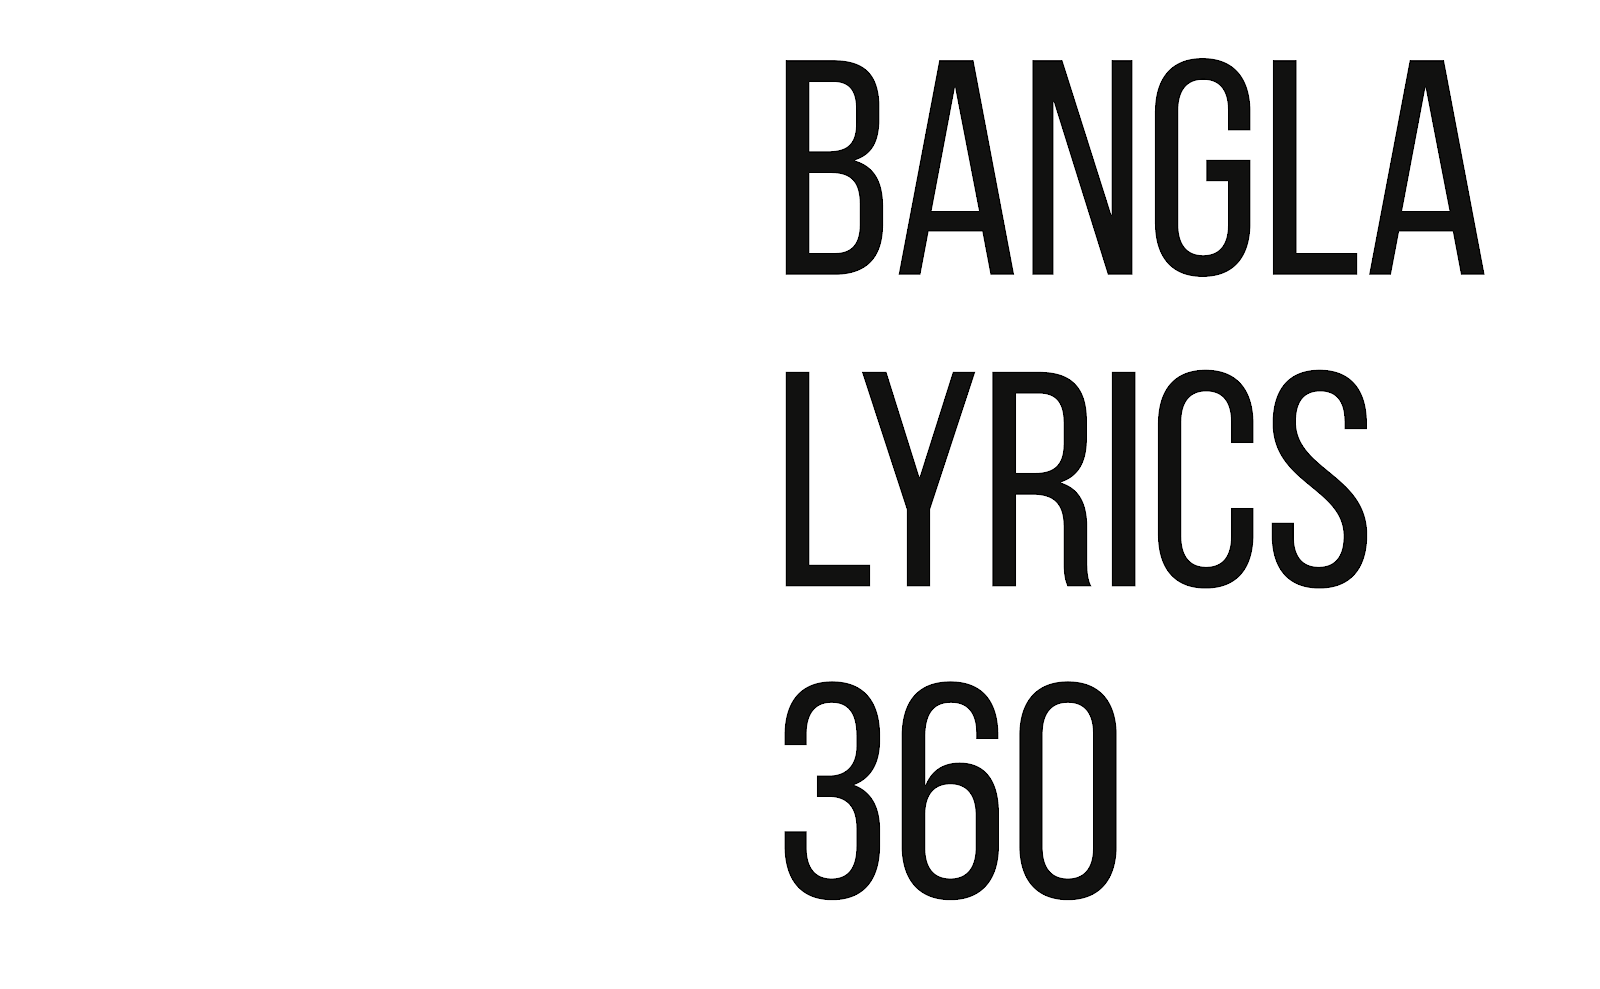 Bangla Lyrics 360